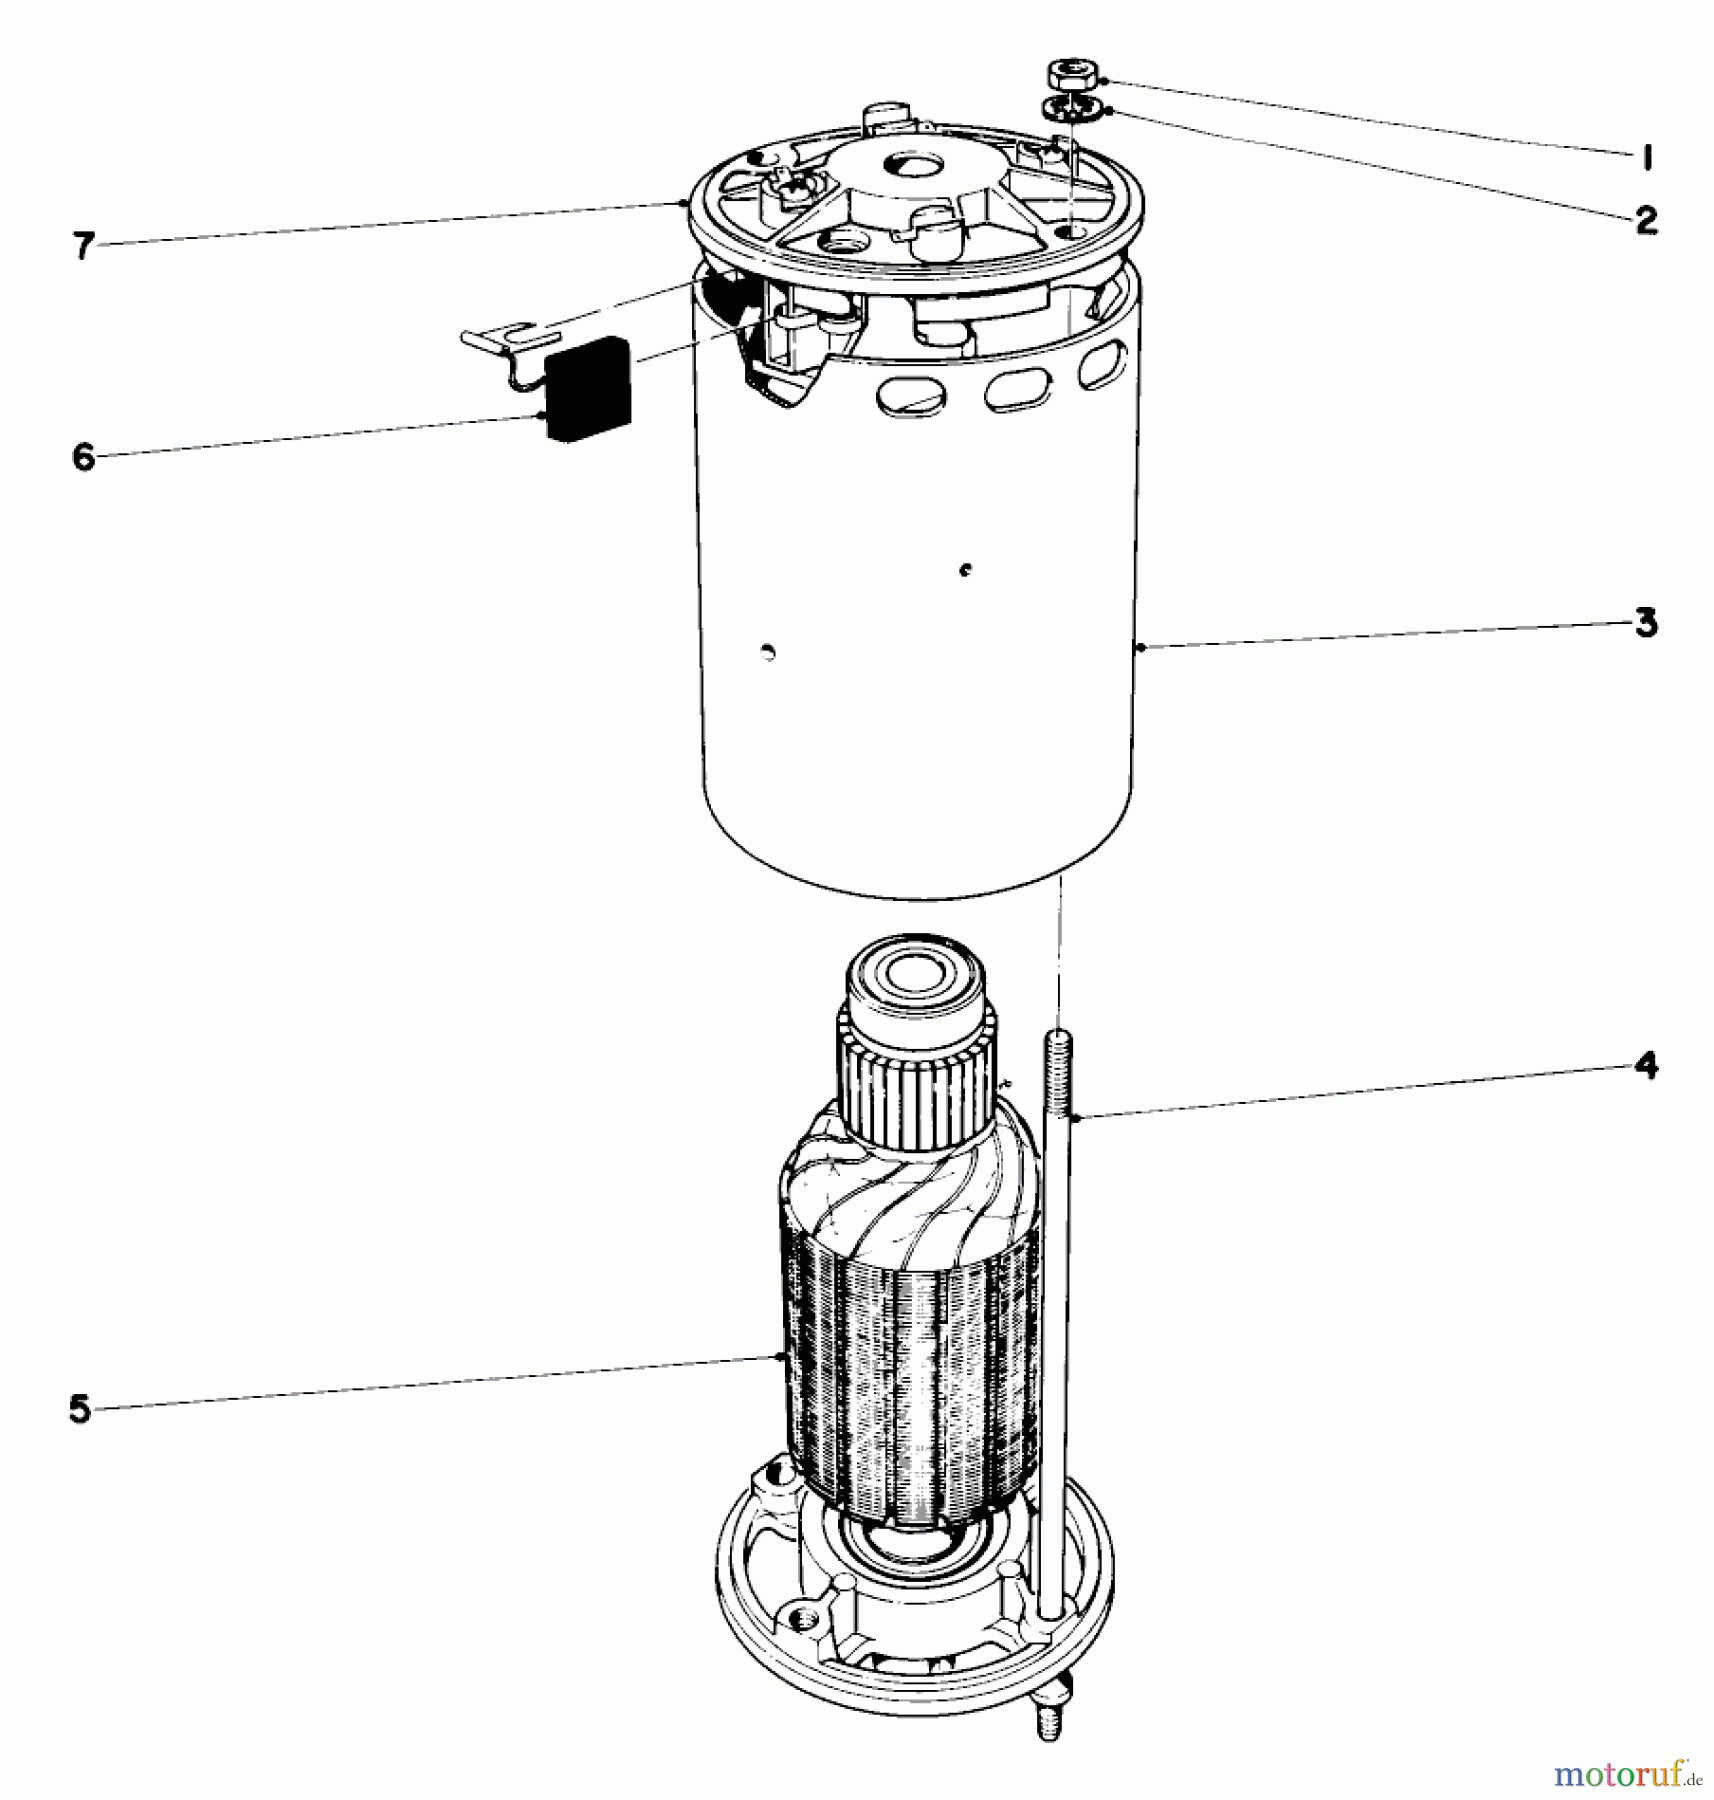  Toro Neu Mowers, Electric 18301 - Toro Electric Whirlwind Lawnmower, 1969 (9000001-9999999) ELECTRIC MOTOR